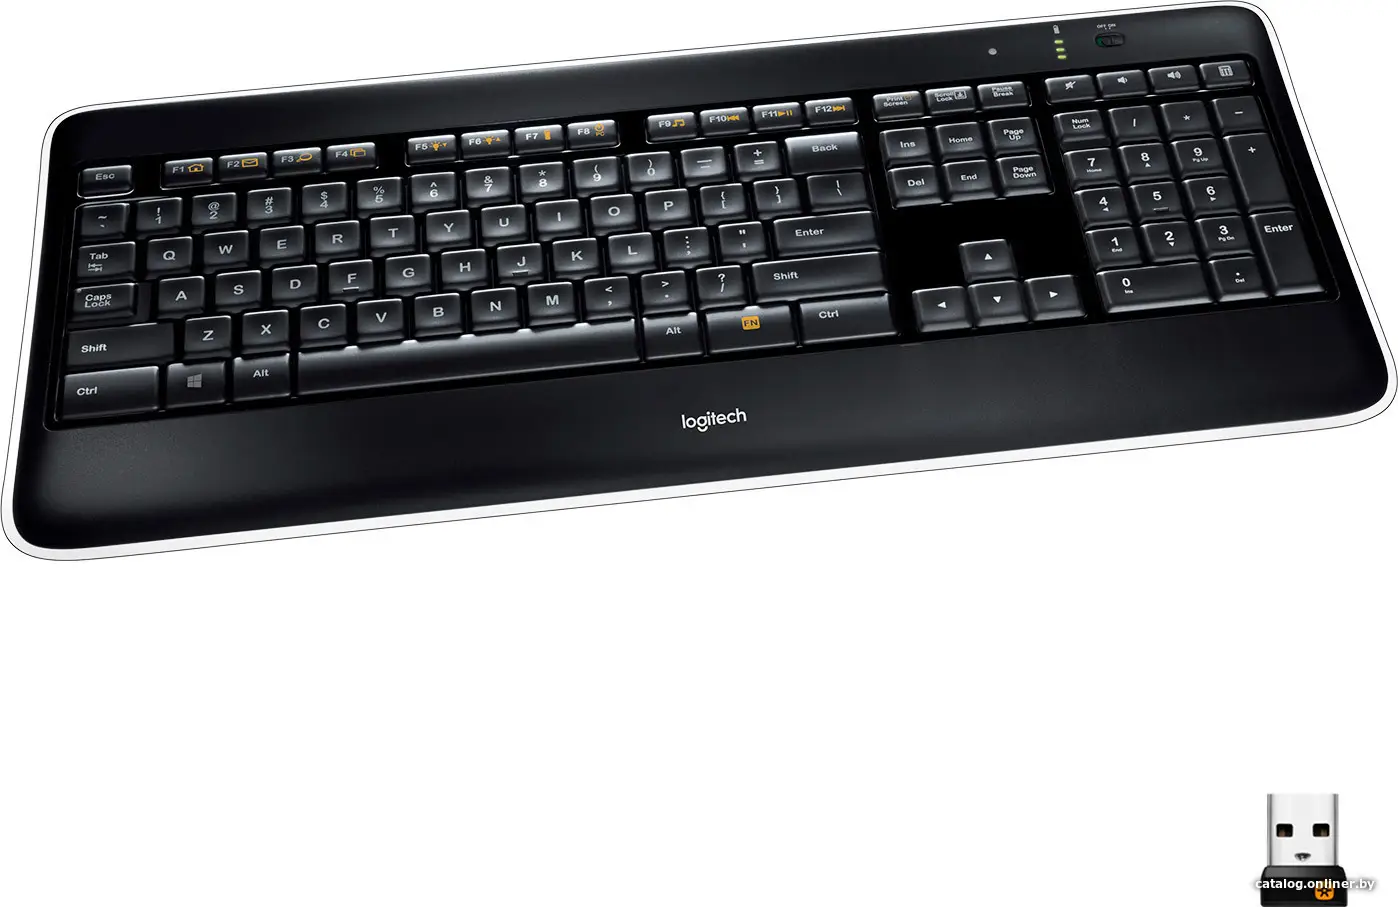 Купить Клавиатура Logitech K800, цена, опт и розница